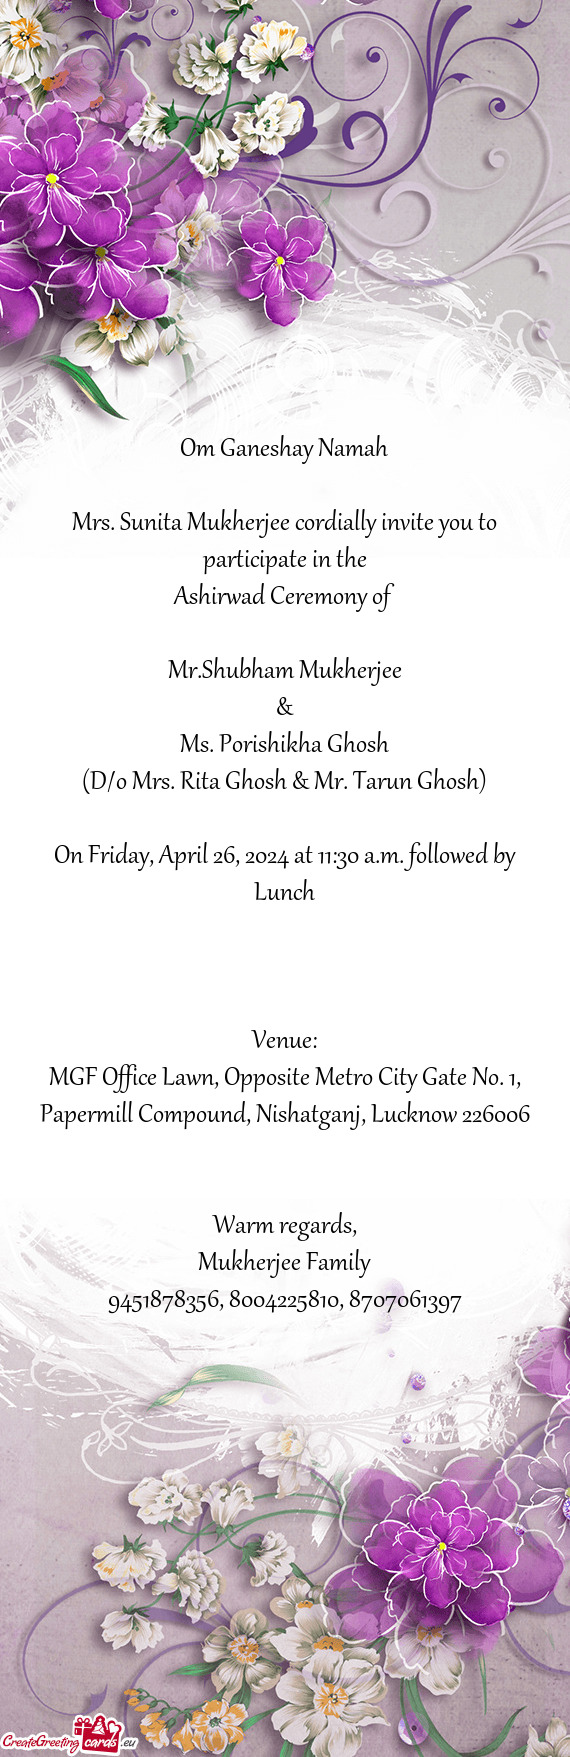 Mrs. Sunita Mukherjee cordially invite you to participate in the